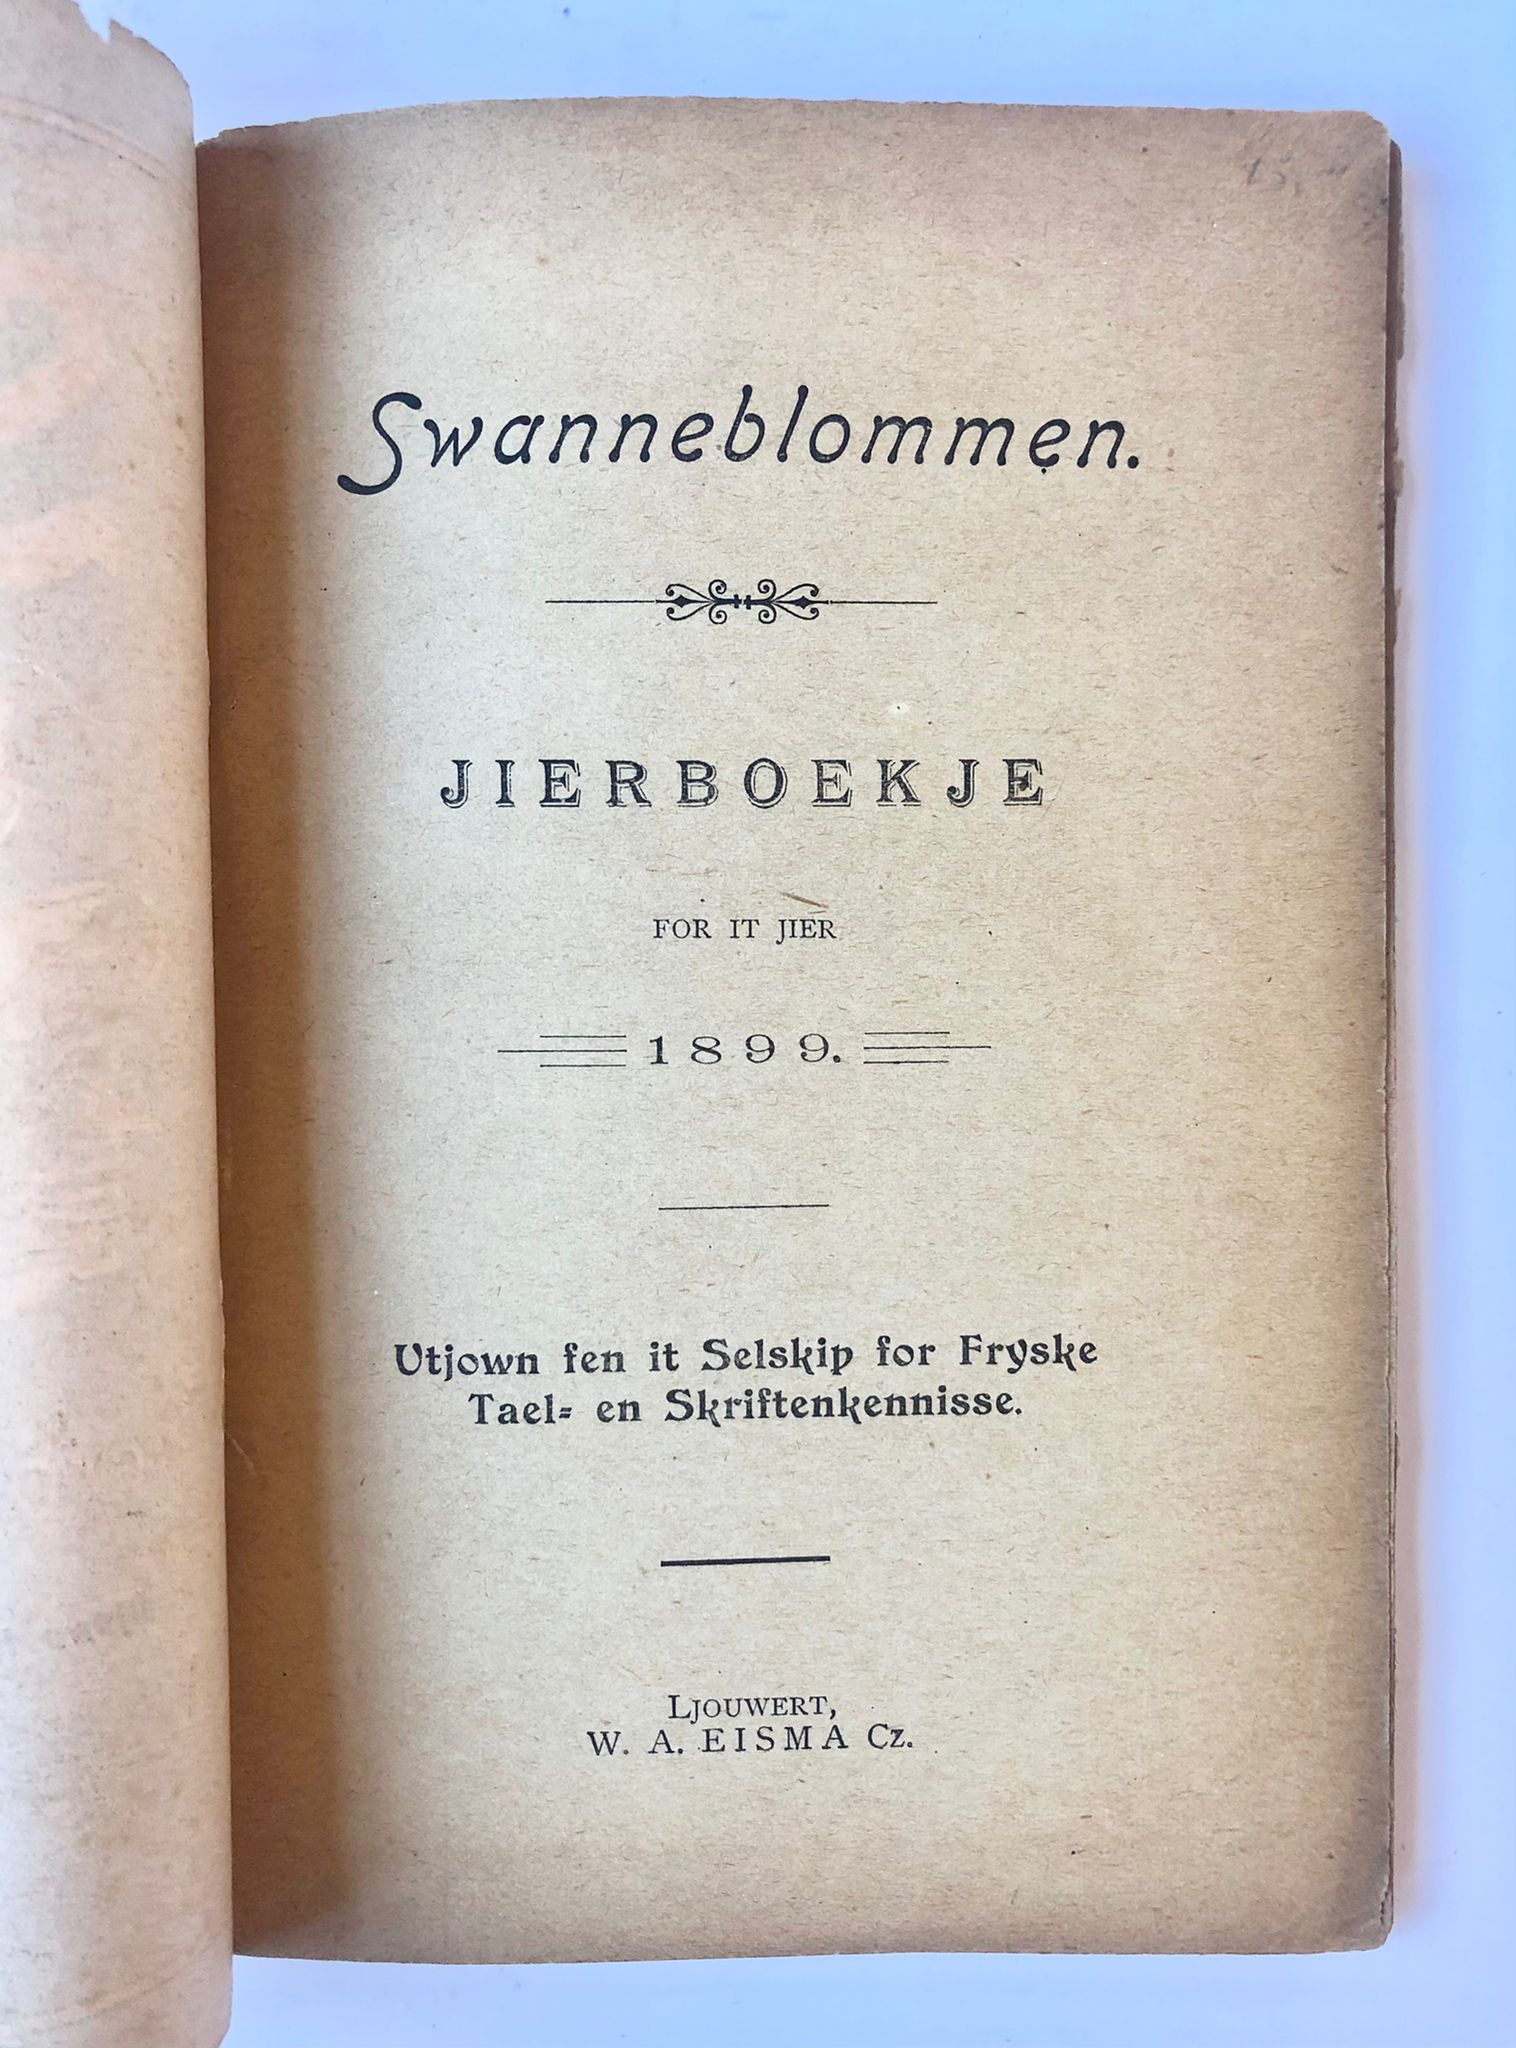 [Friesland, Ljouwert 1899] Swanneblommen, tierboekje for it jier 1899. Útjown fen it Selskip for Fryske tael- en skriftenkennisse. W. A. Eisma Cz., Ljouwert, 84 pp.